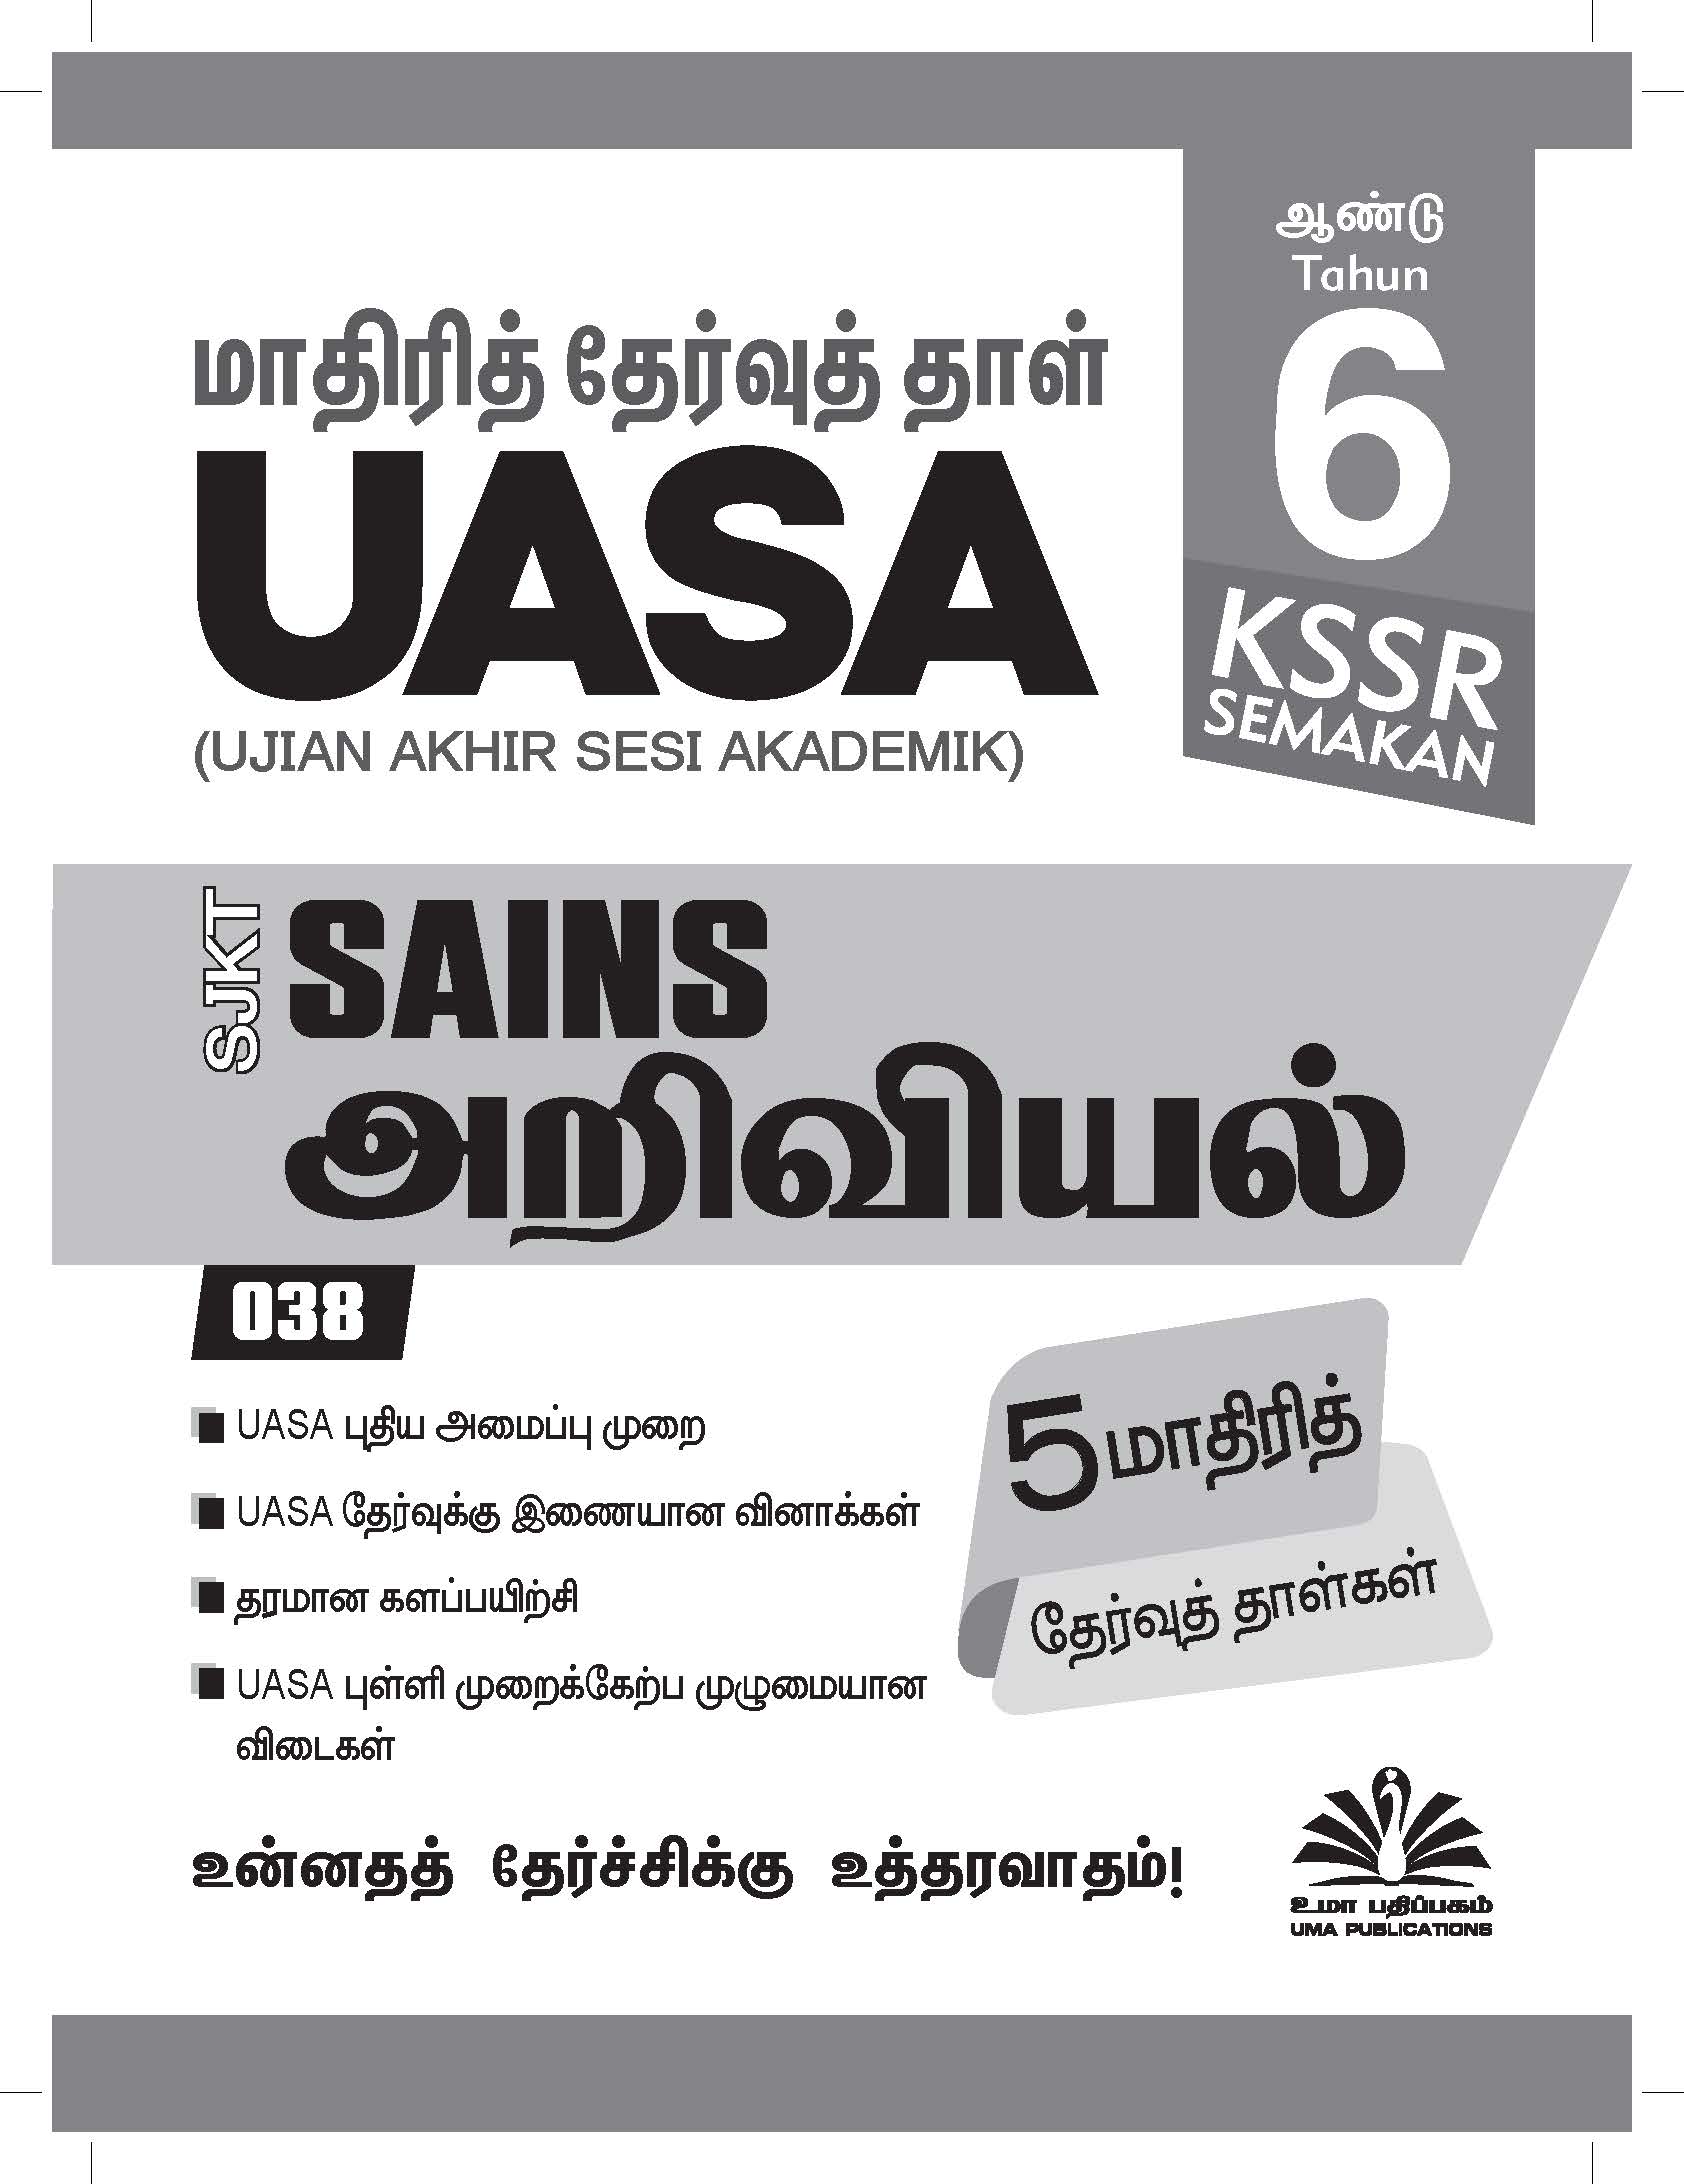 UASA Sains Year 6_FINAL PRINTING_Page_01